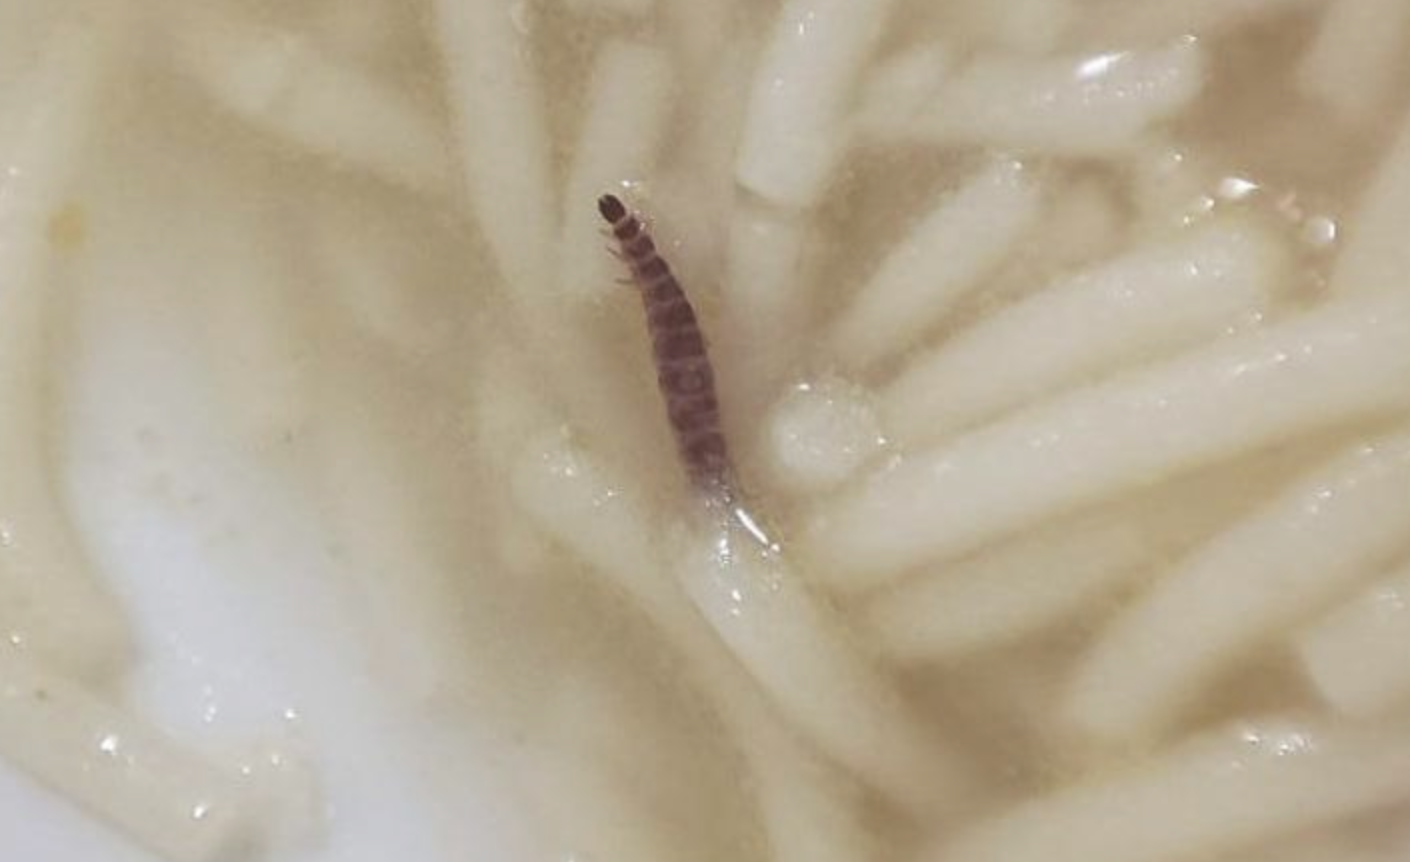 Larvas de gusano entre los fideos de la sopa, en el complejo residencial de León, en una imagen de 'Leónnoticias'.